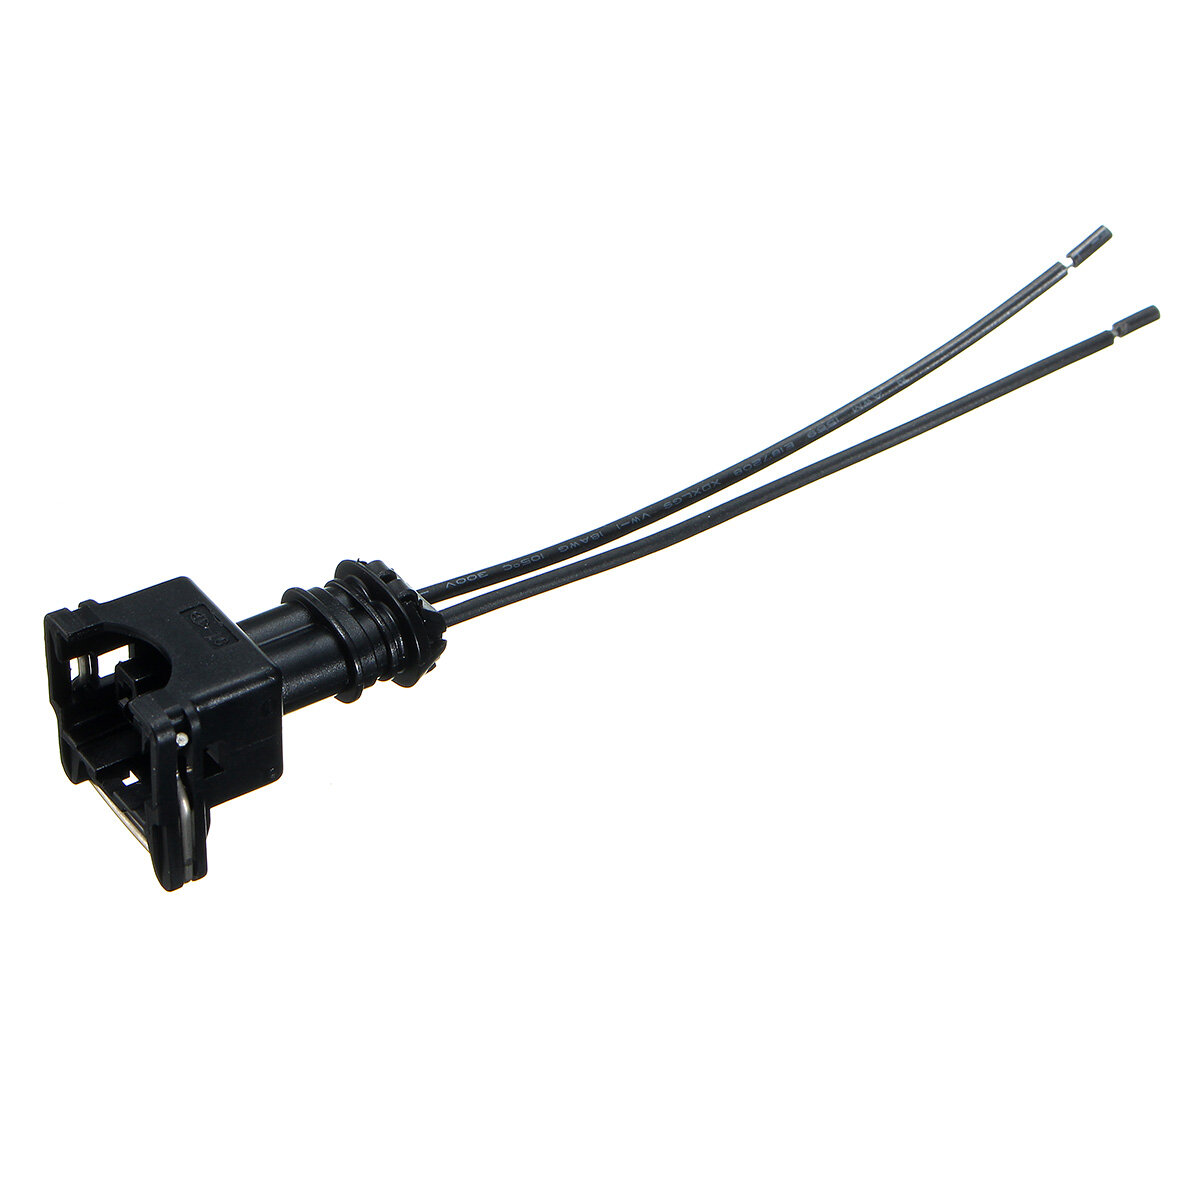 Autobrandstof I njector Connector Kabelstekker Clip